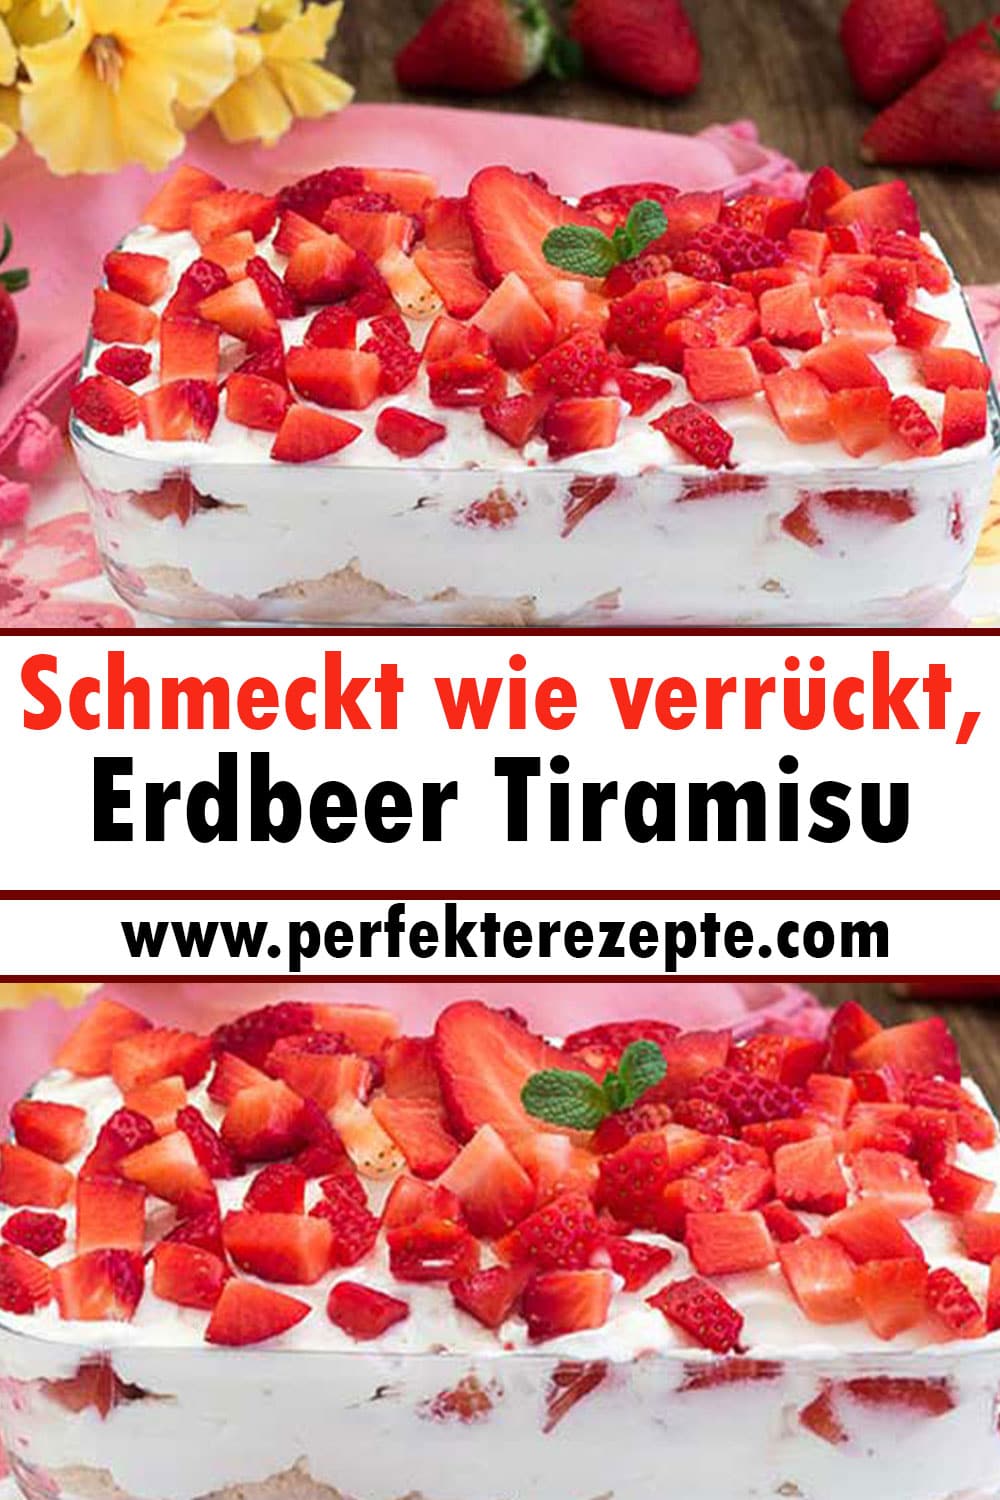 Schmeckt wie verrückt, Erdbeer Tiramisu Rezept